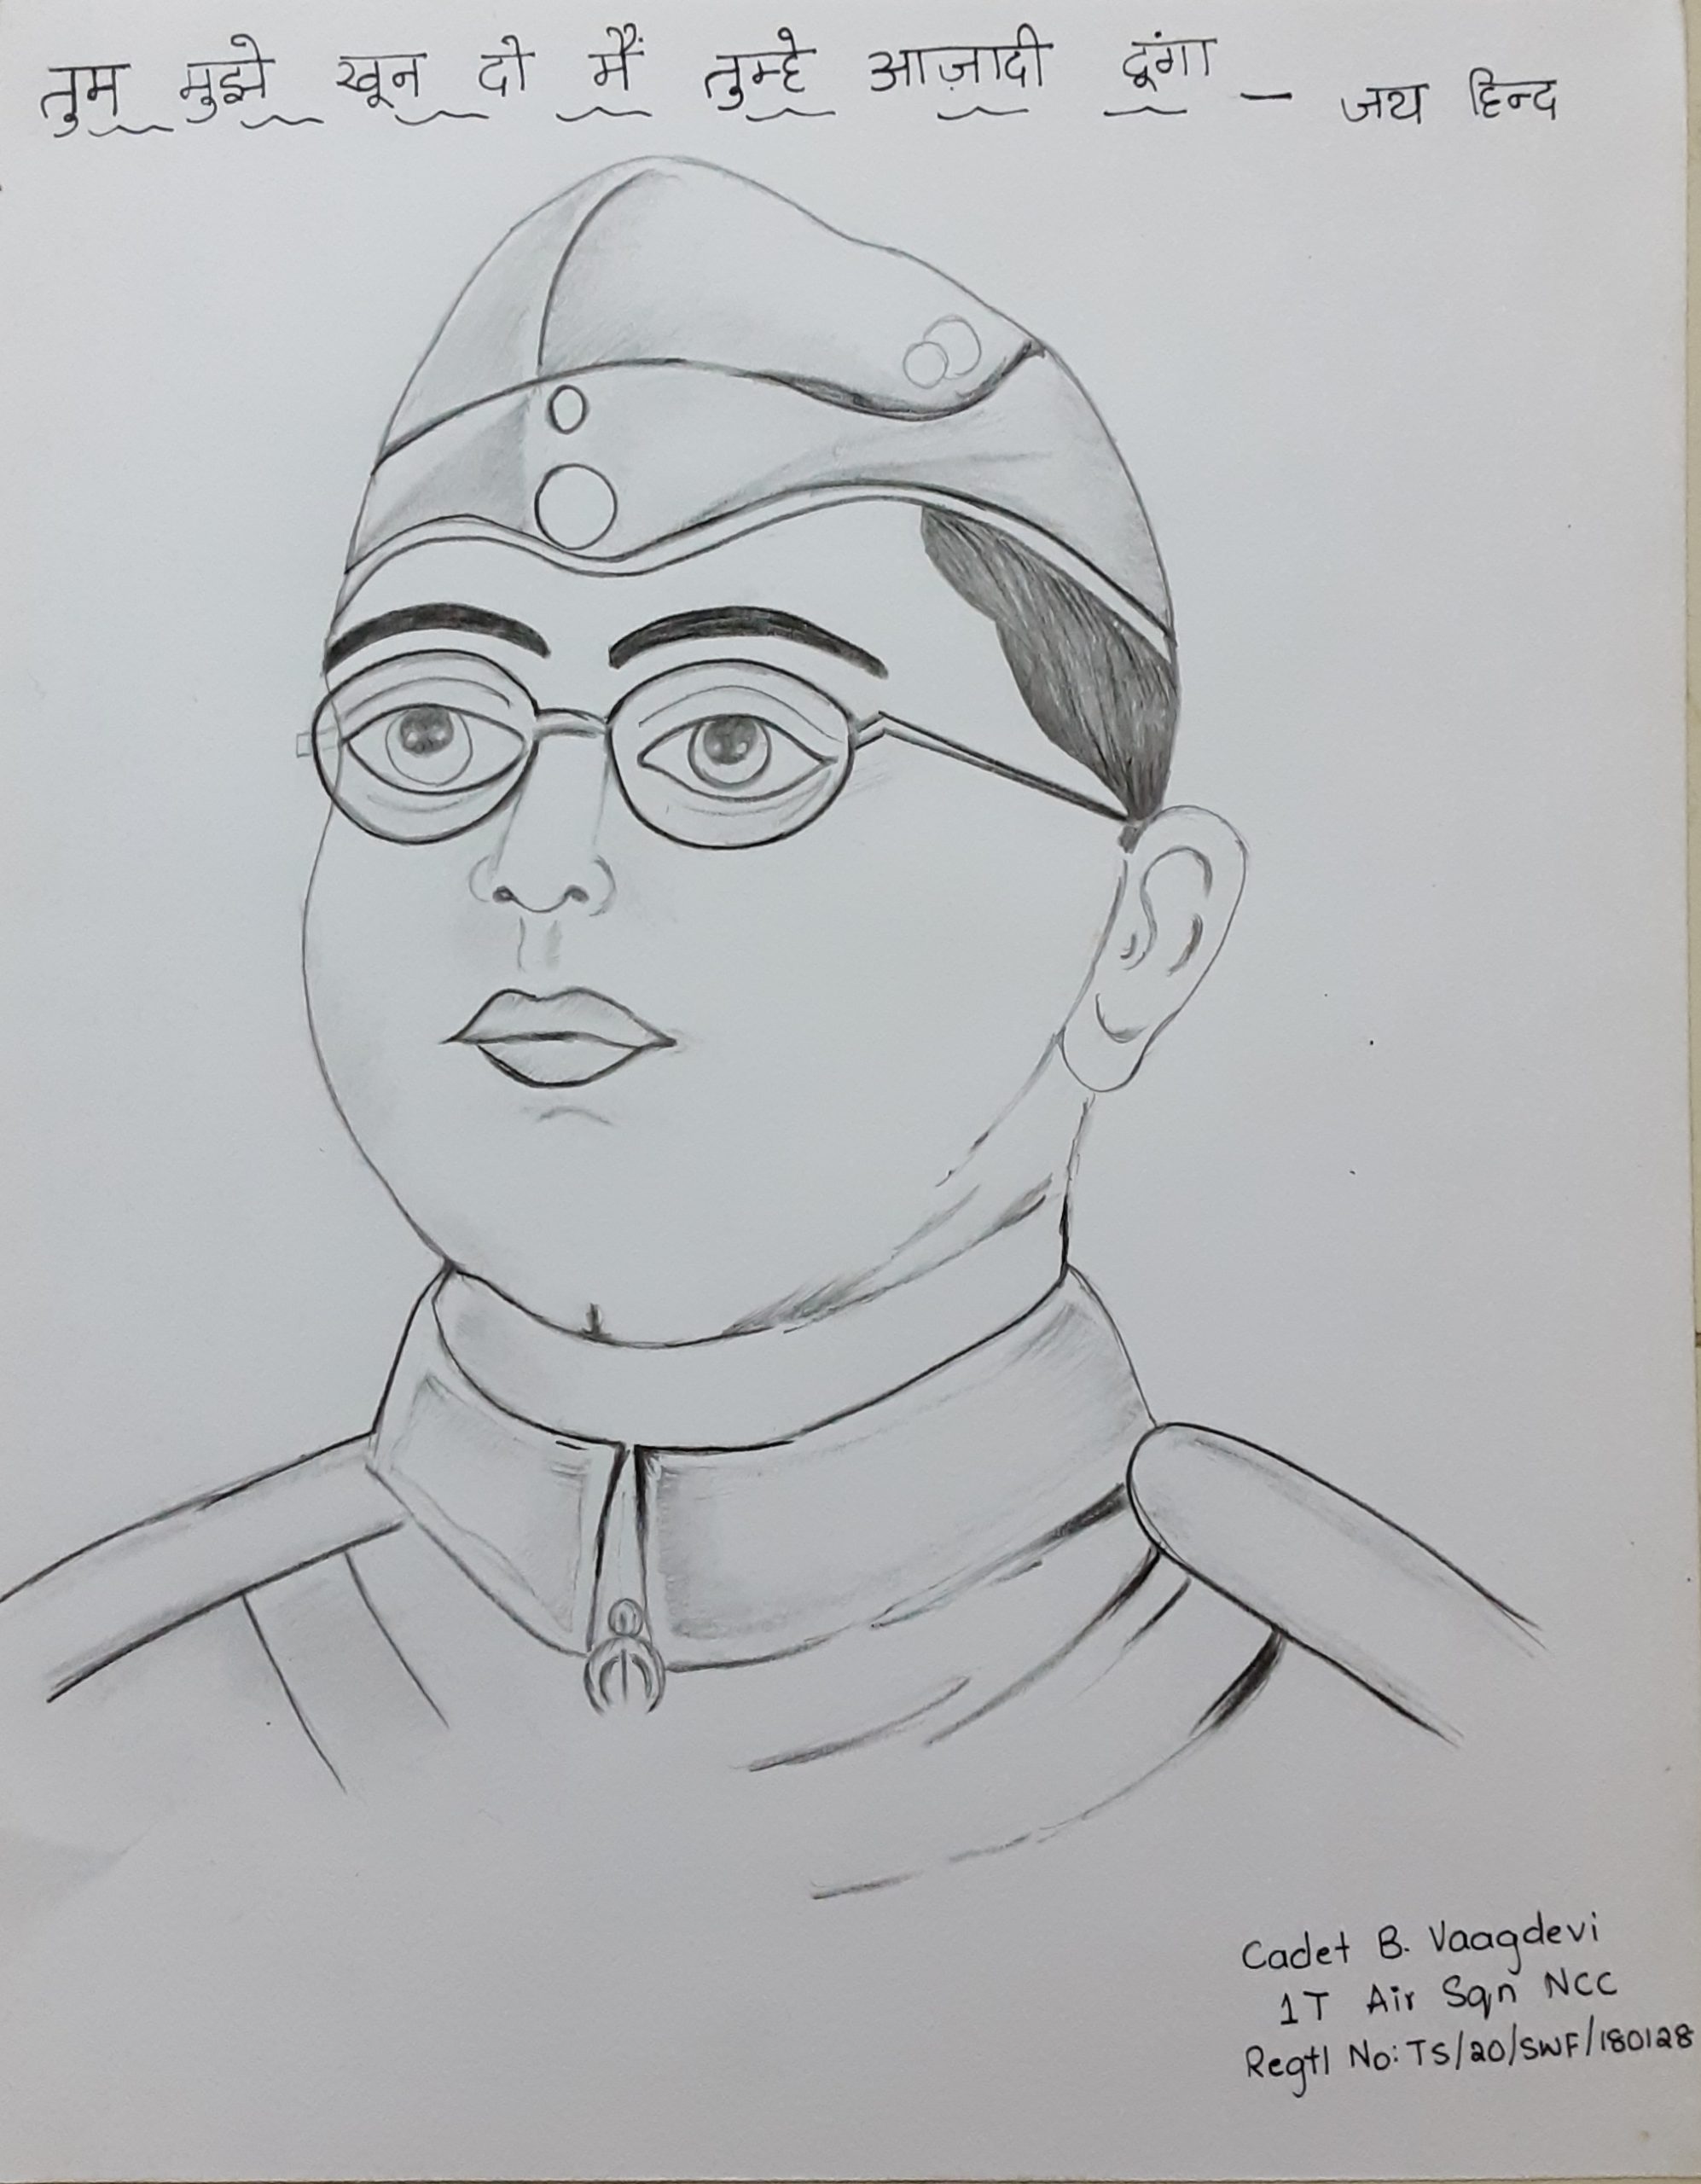 Netaji Subhash Chandra Bose (1) Template | PosterMyWall